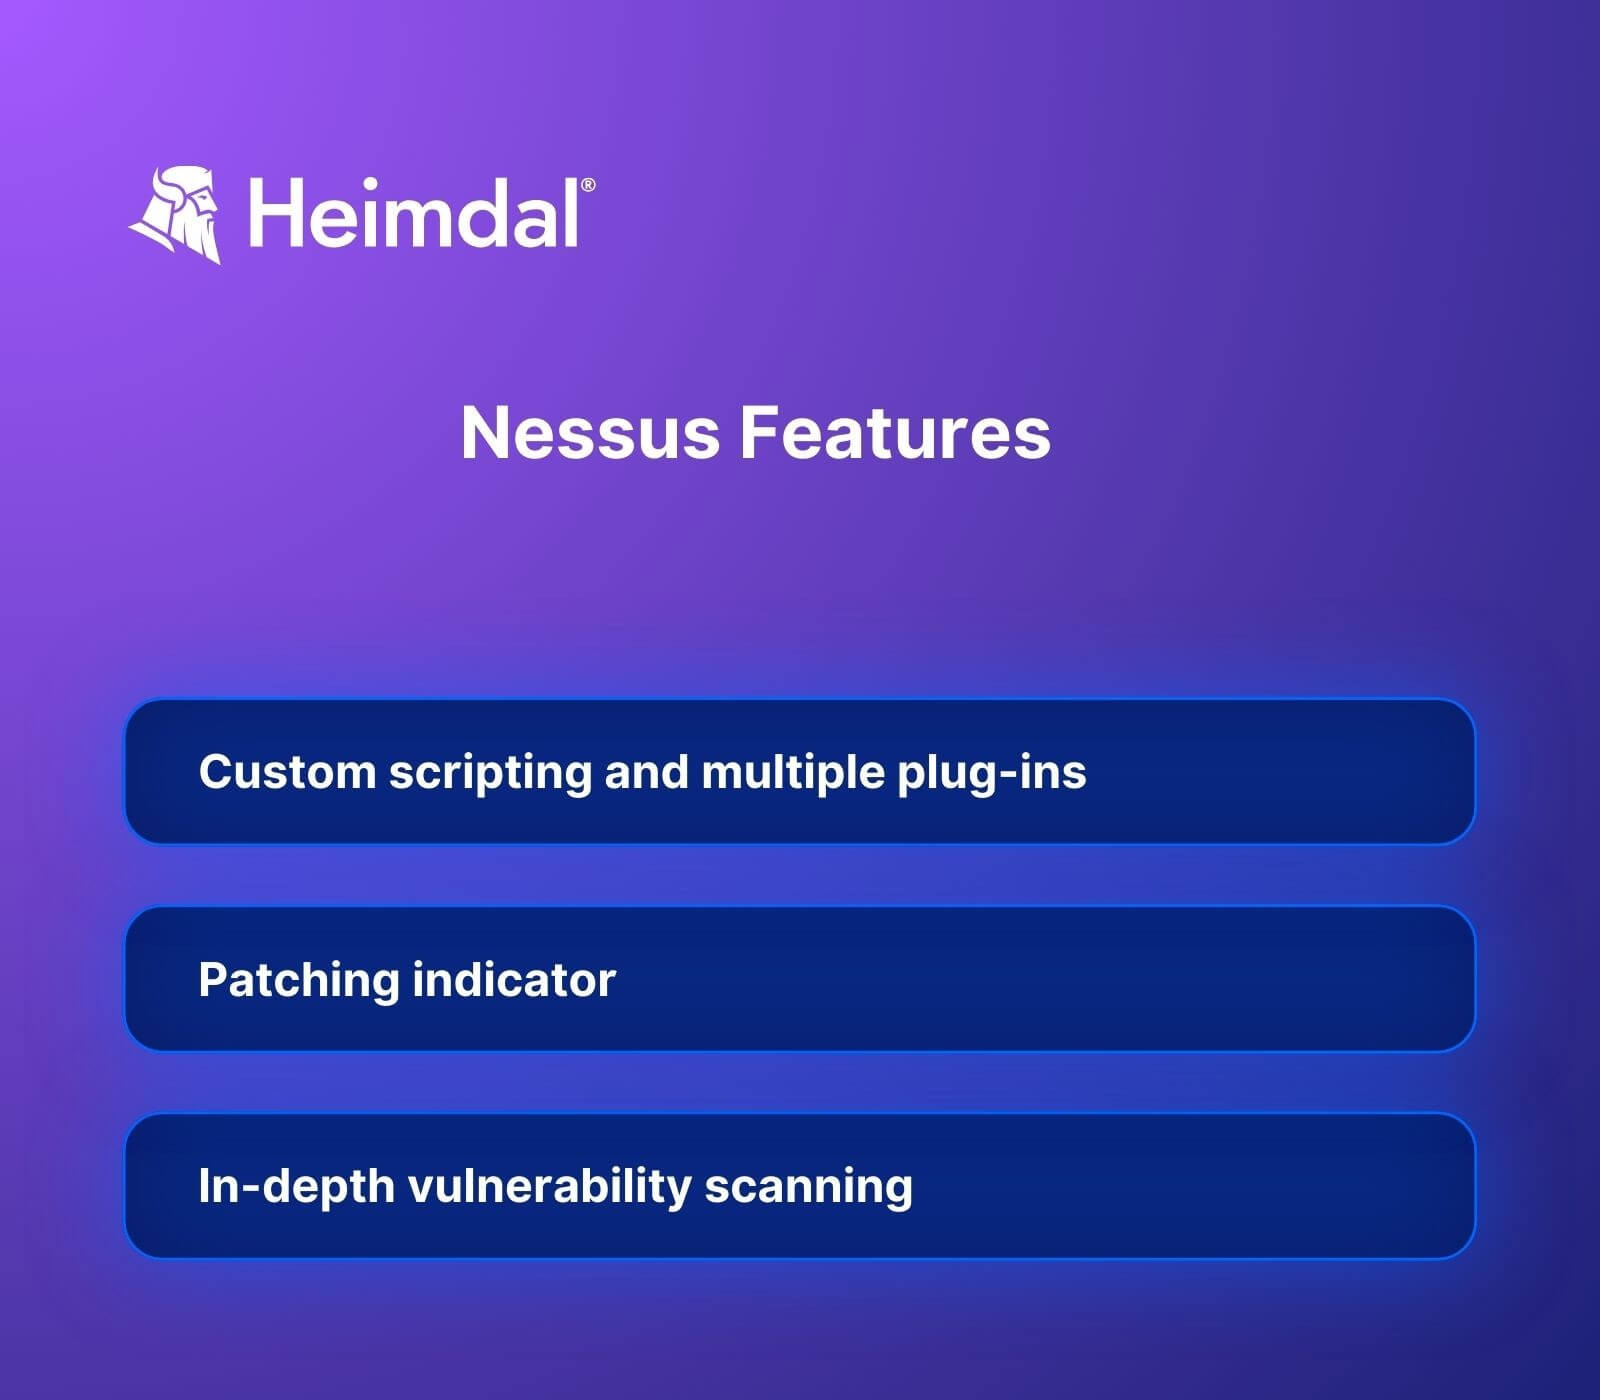 Nessus Features